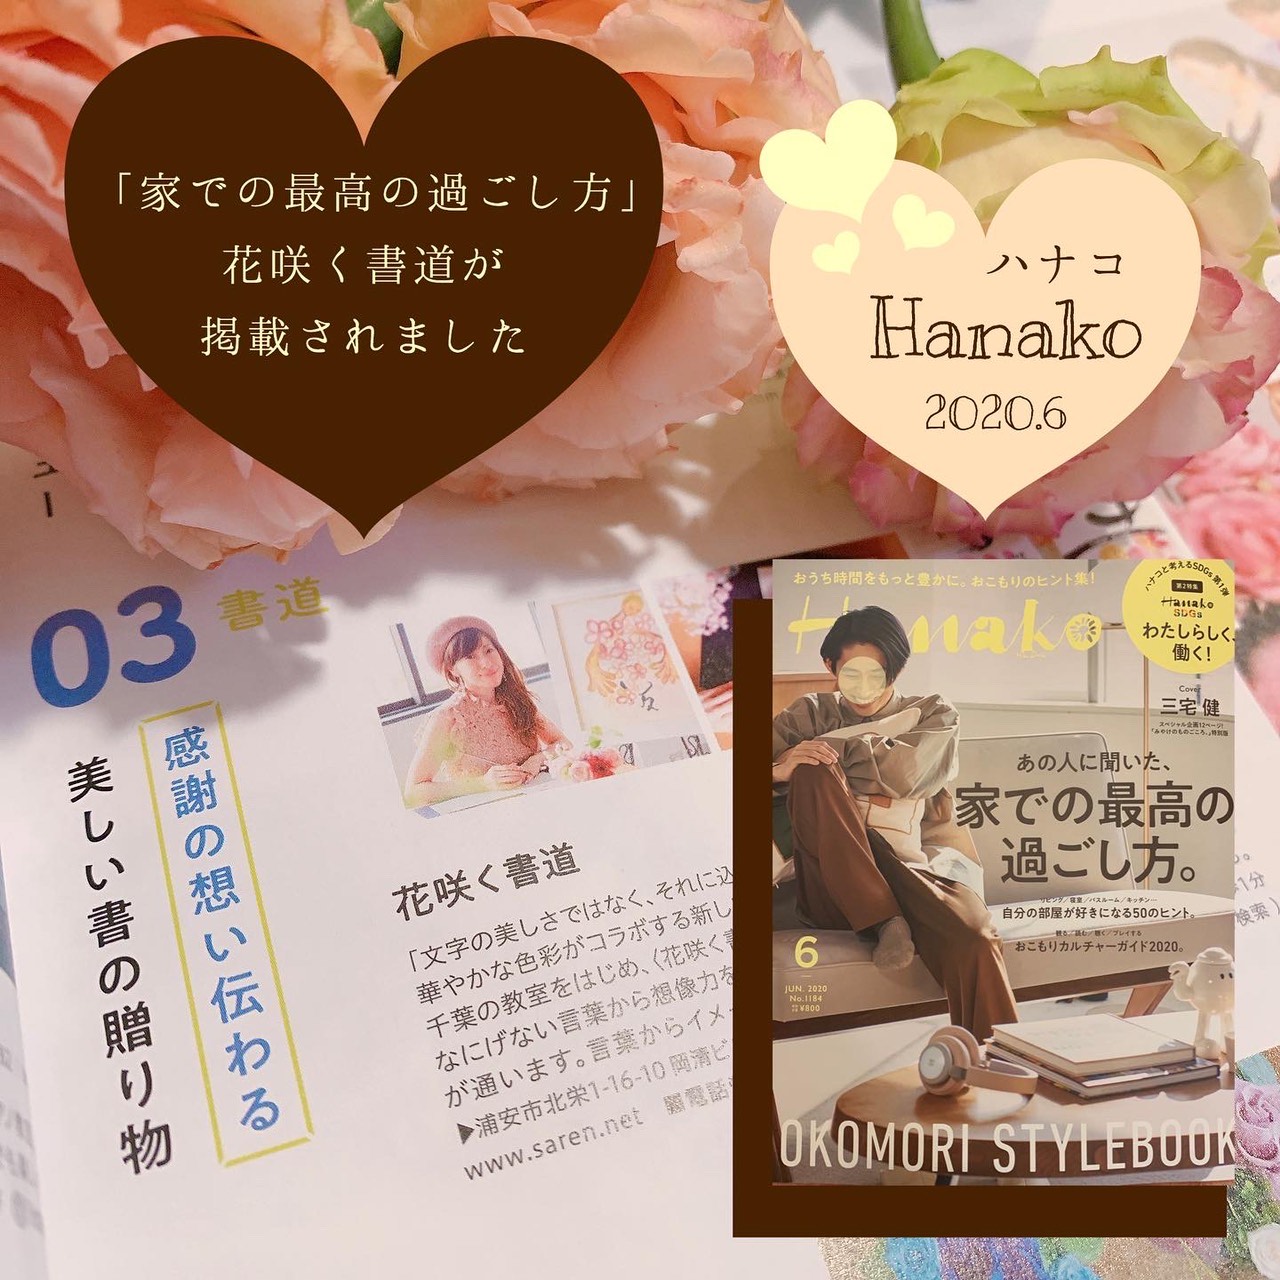 » Hanako